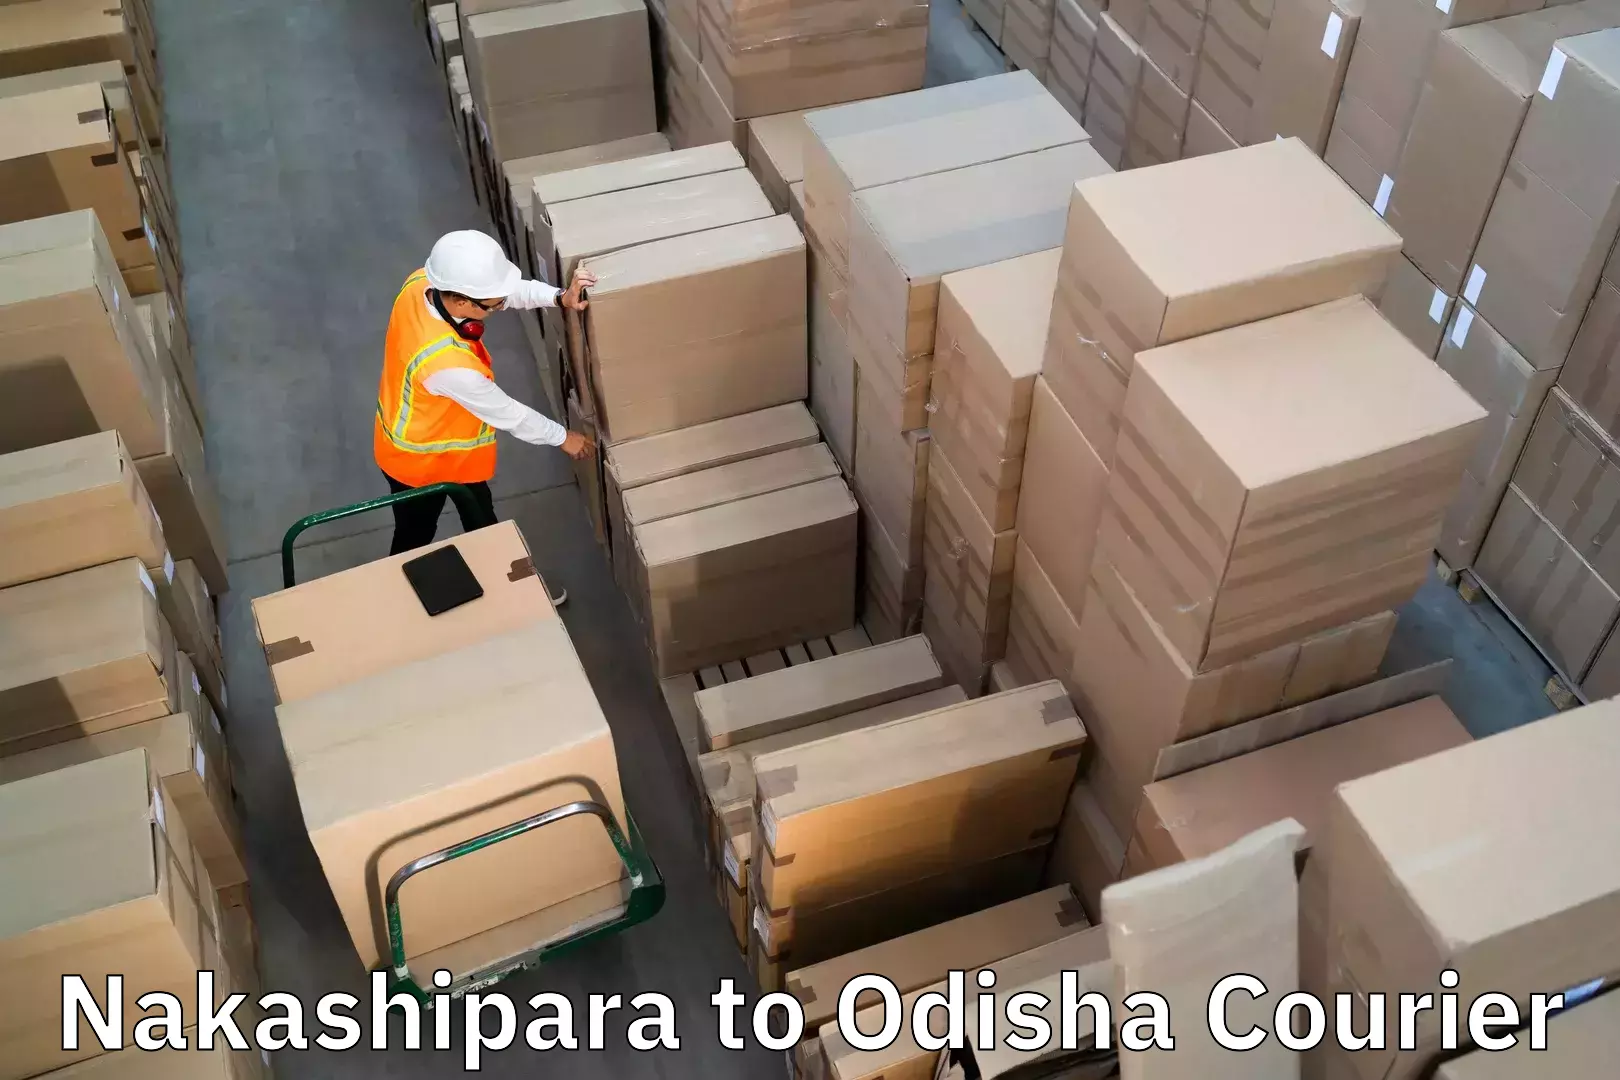 Luggage shipment logistics in Nakashipara to Rourkela